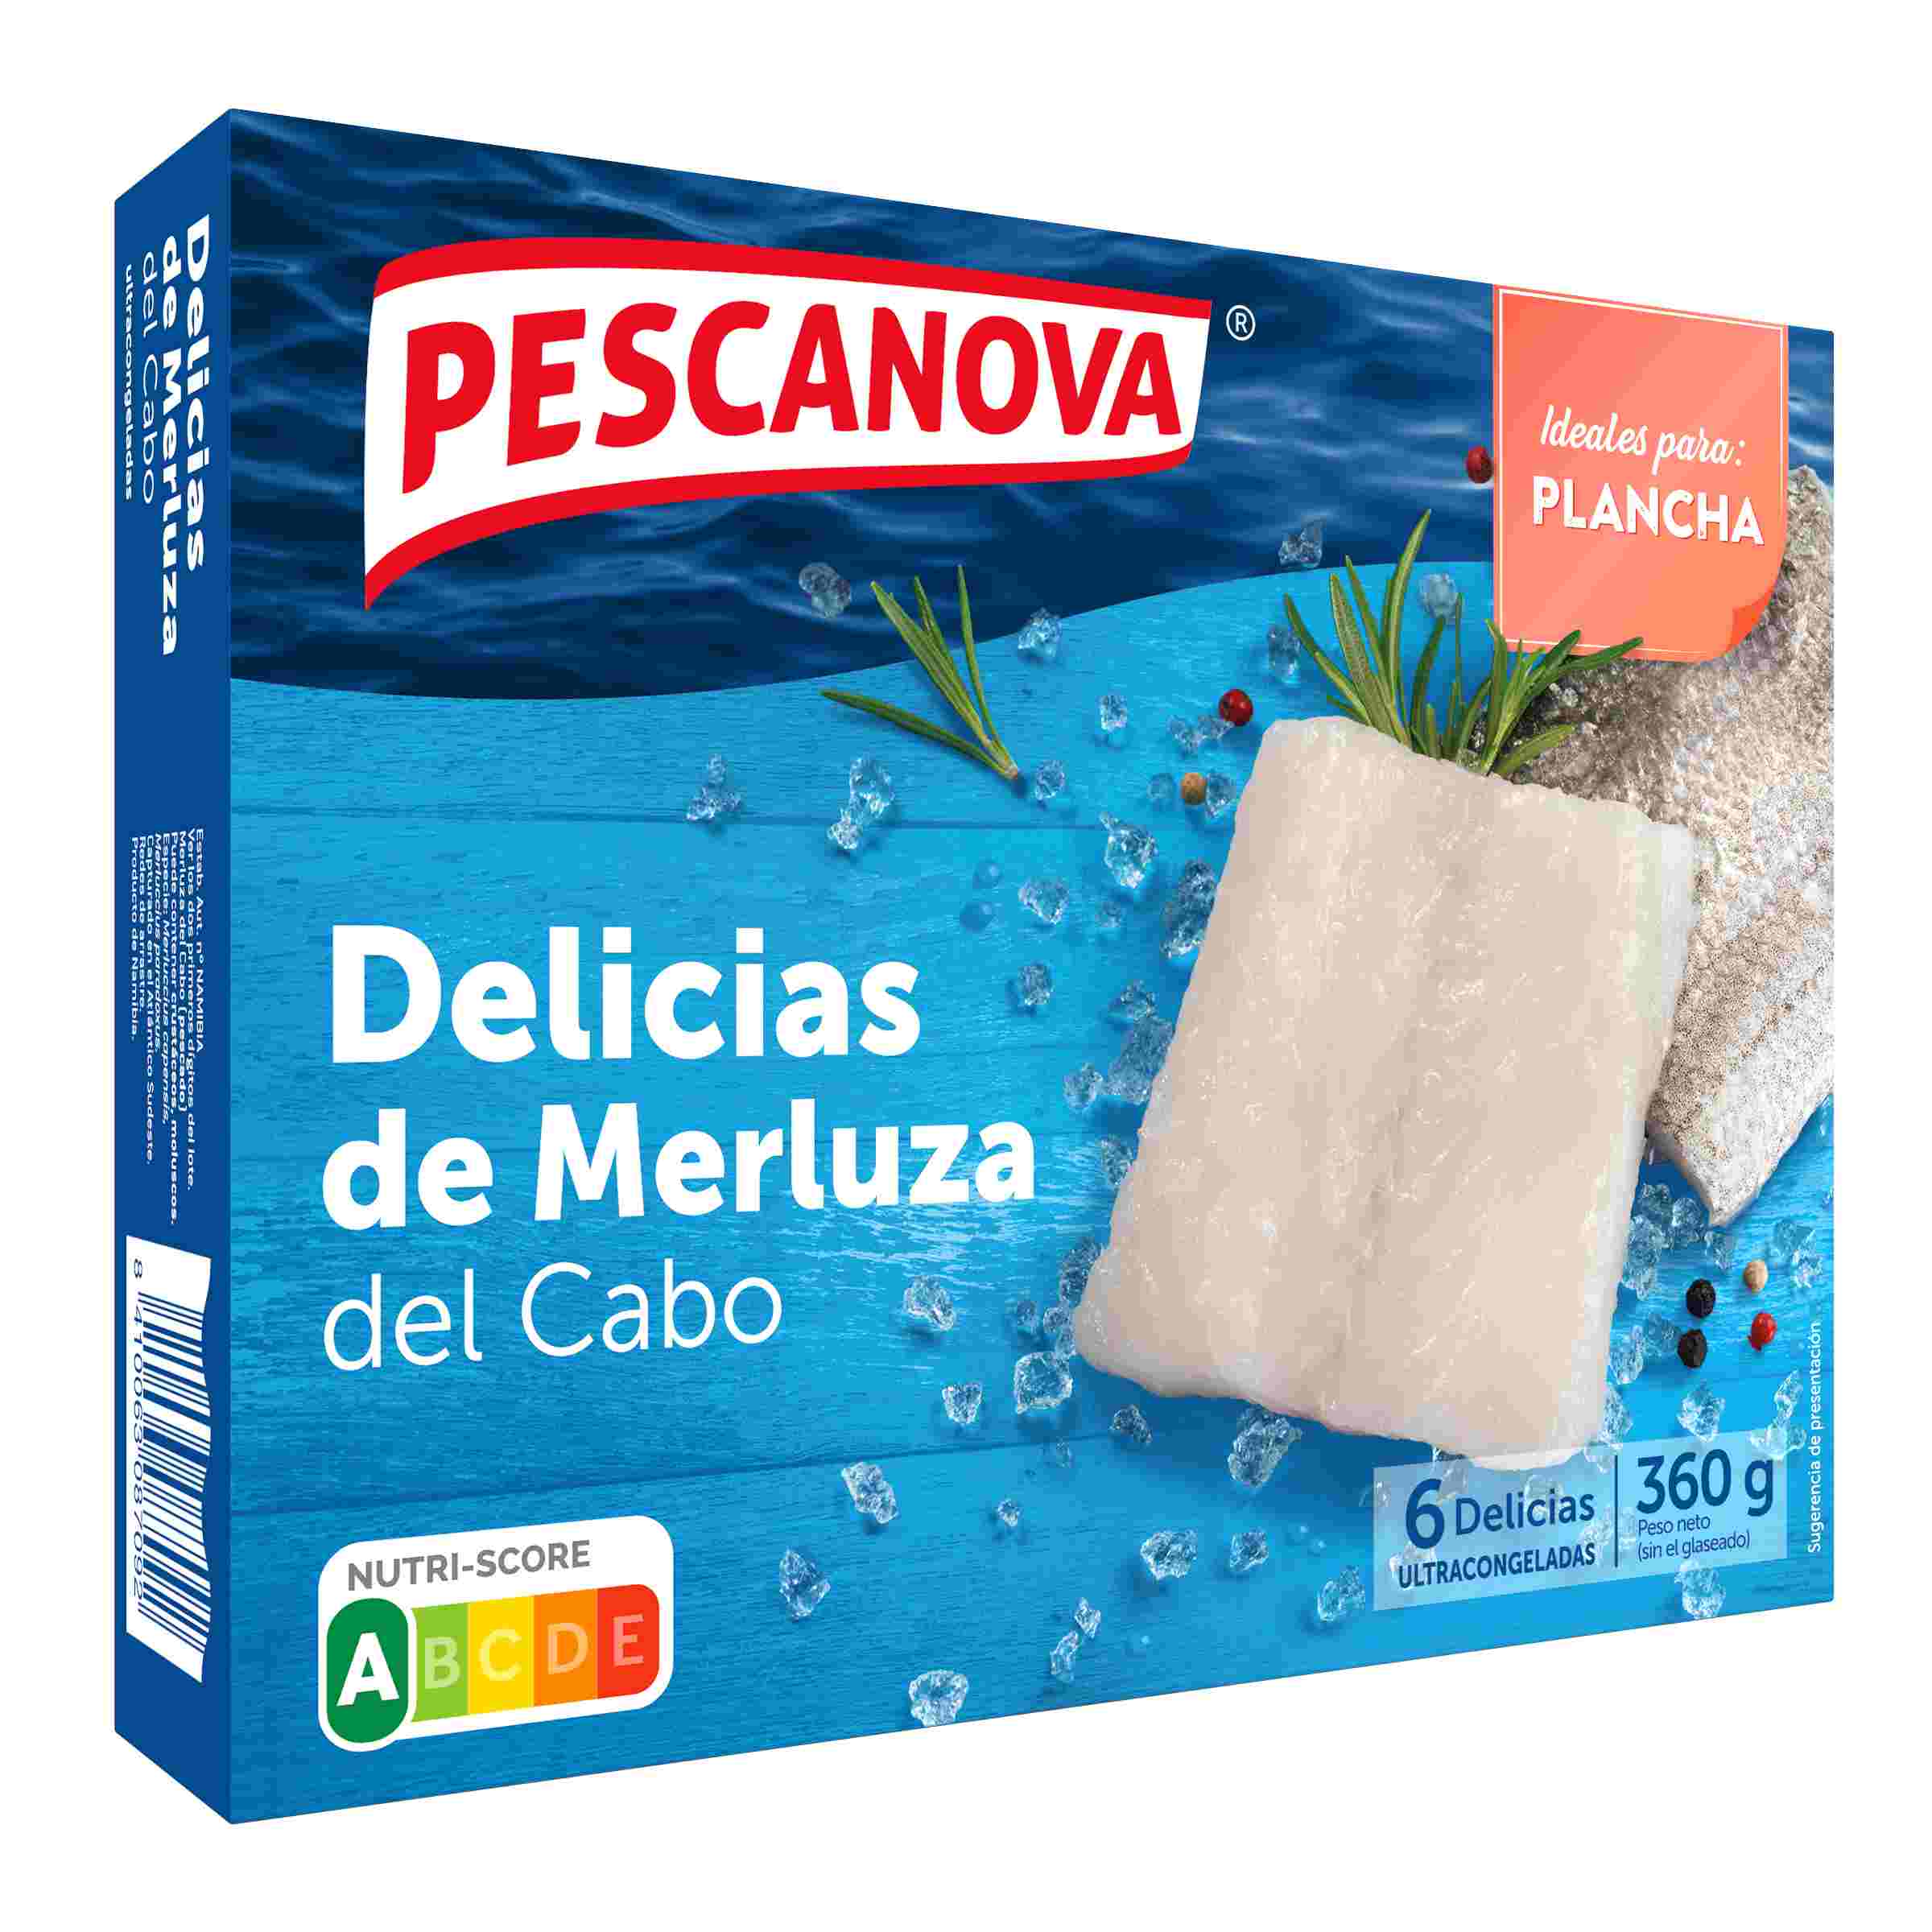 Delicias de merluza 360g PESCANOVA